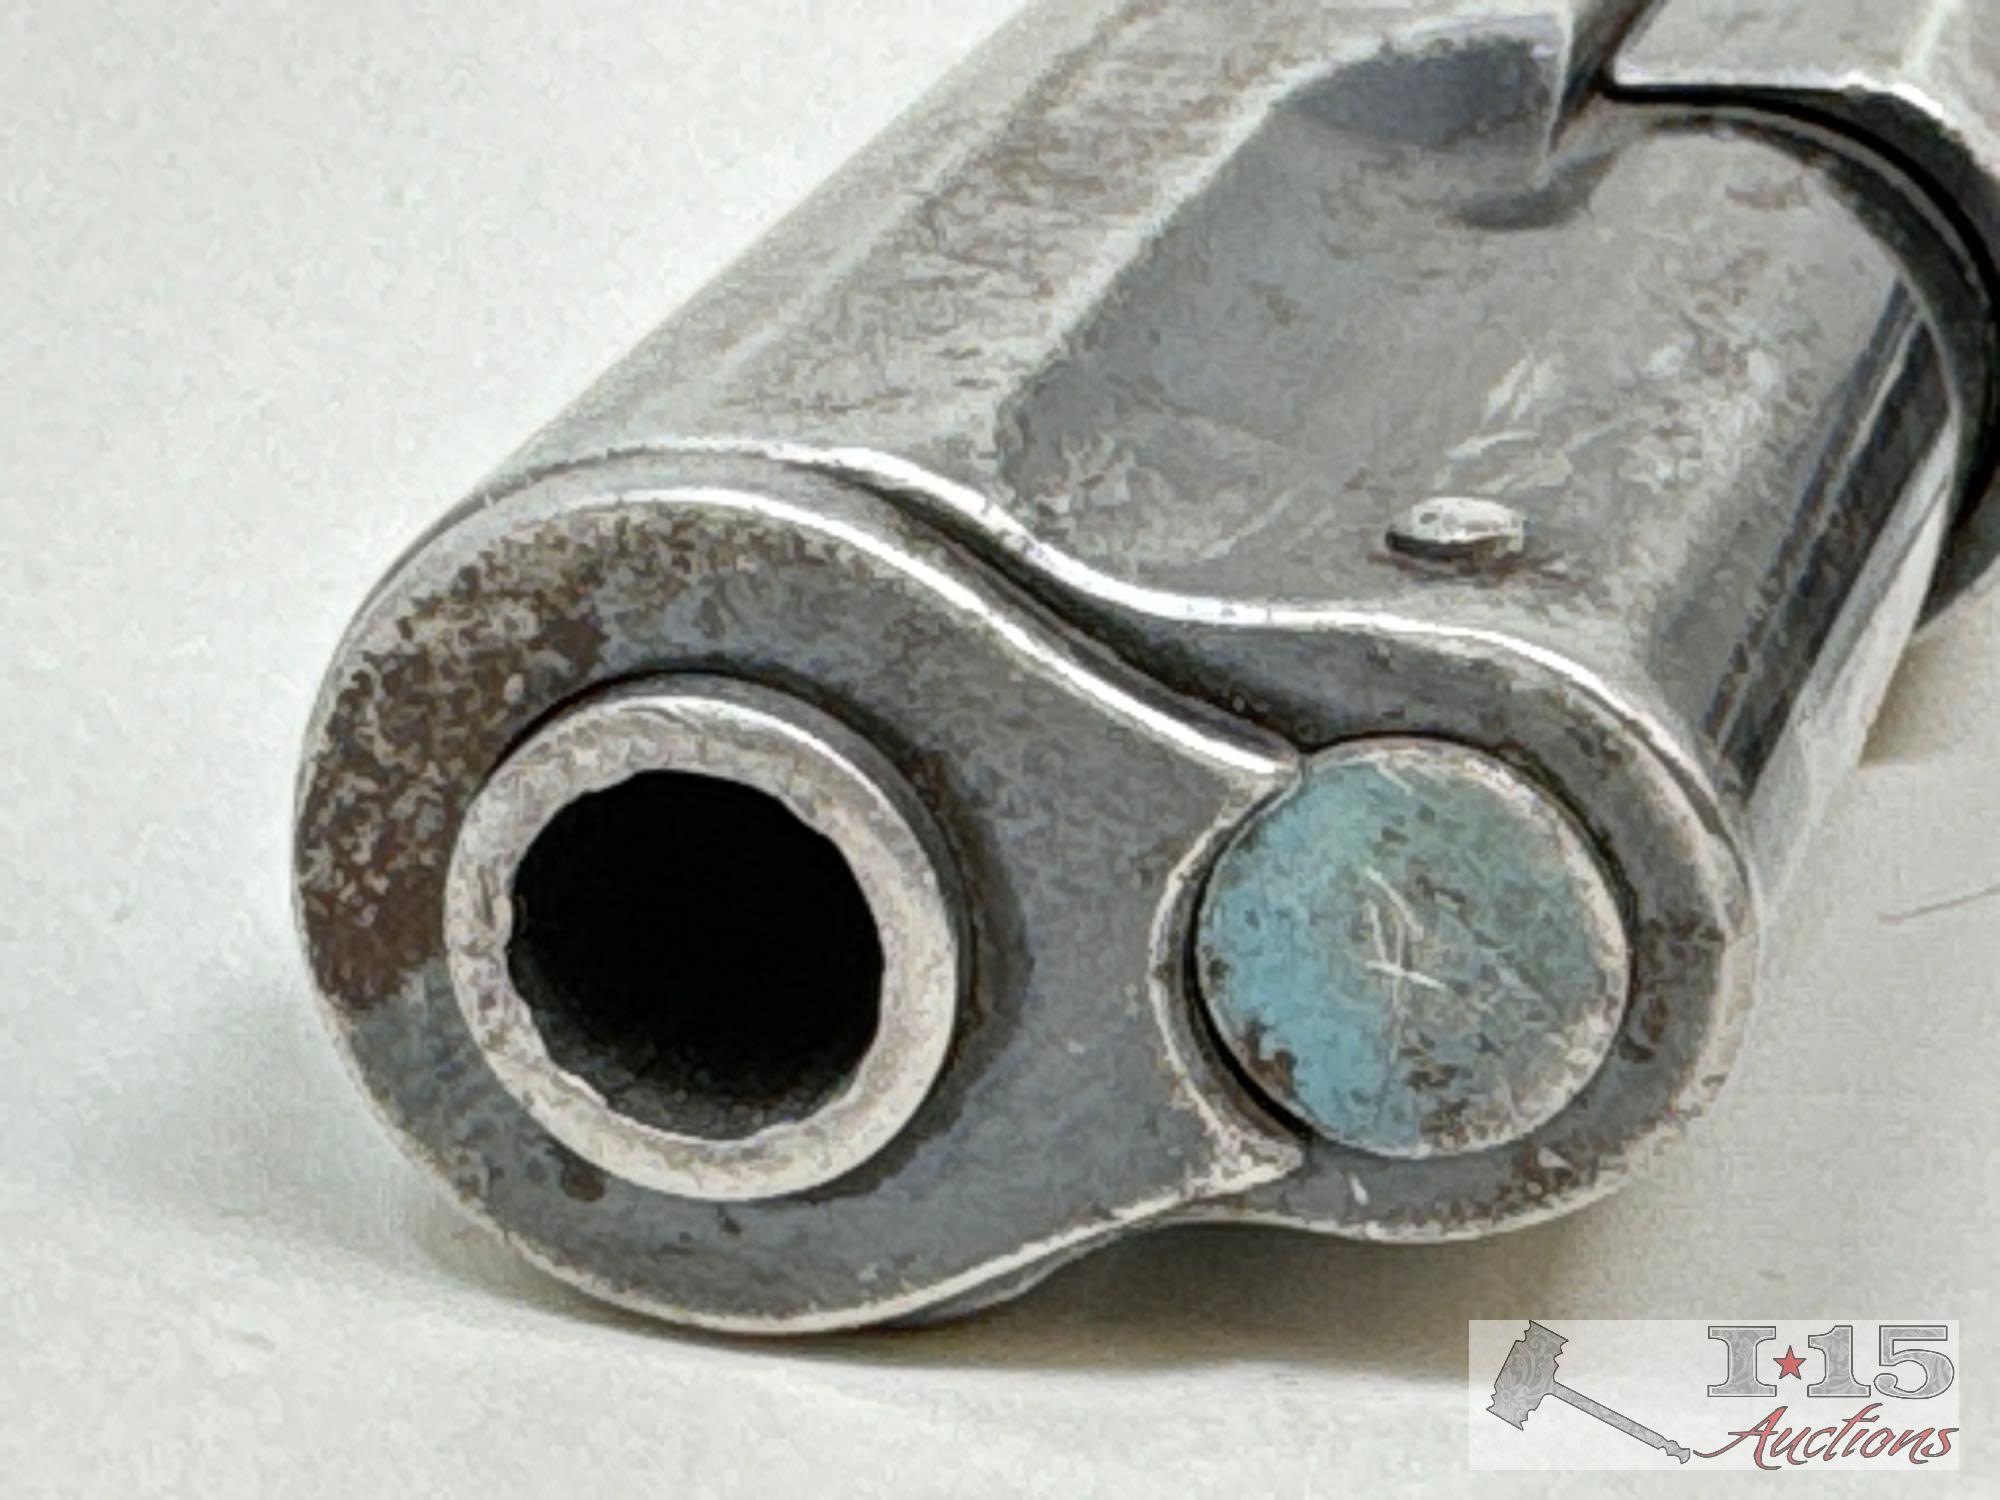 Colt Automatic .32 Semi-Auto Pistol